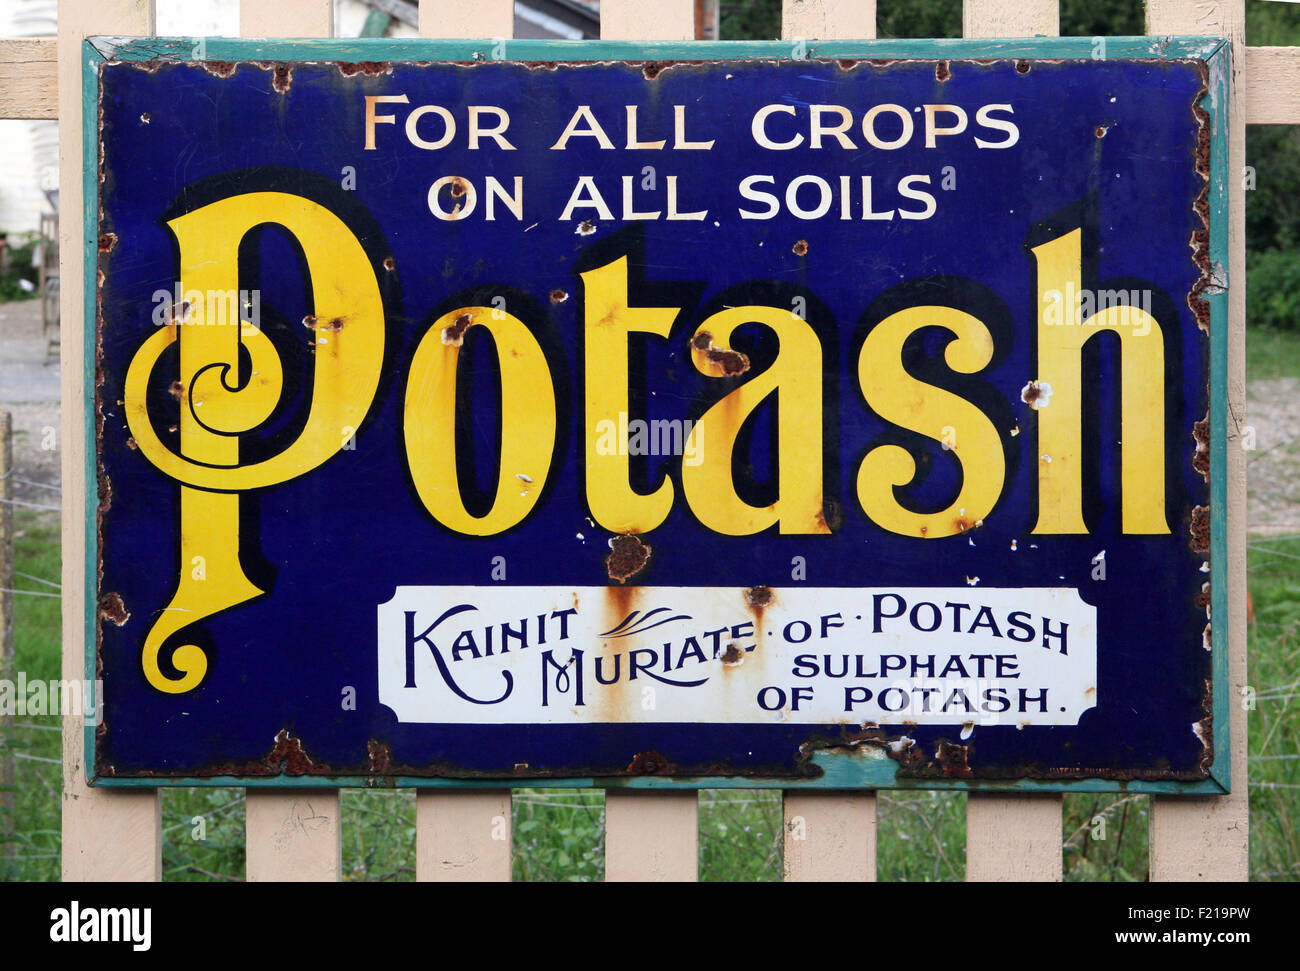 Potash poster Stock Photo